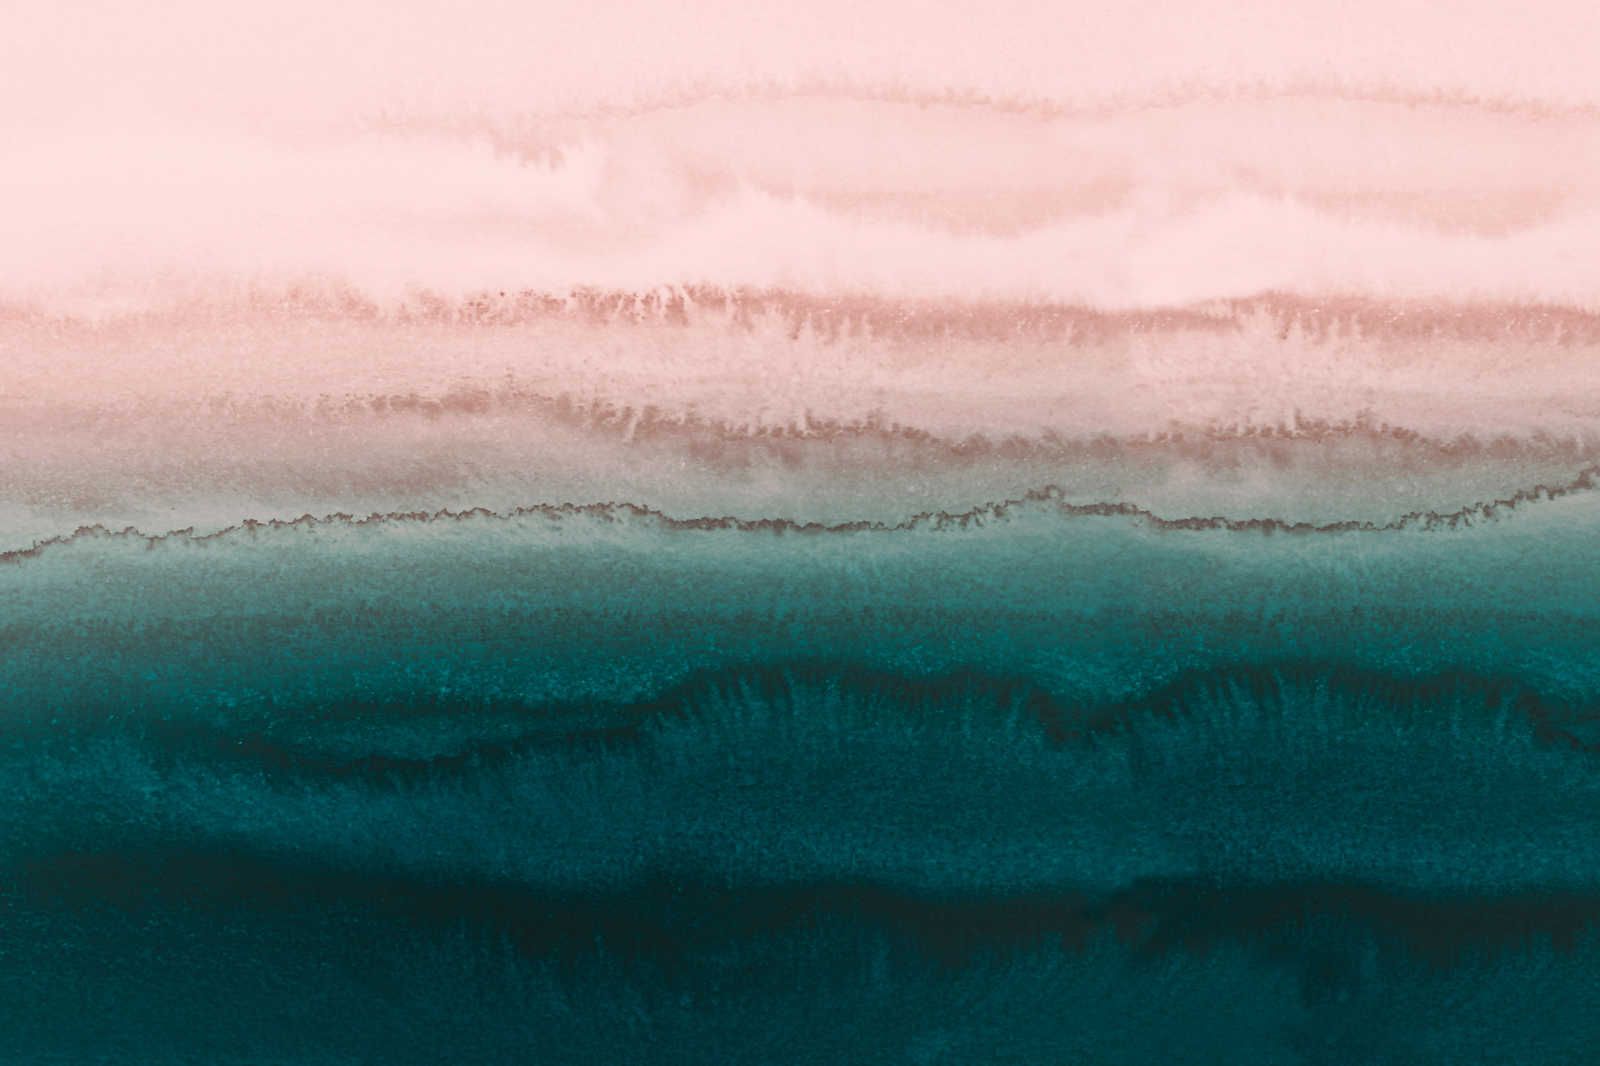             Marée toile avec eau abstraite aquarelle - 1,20 m x 0,80 m
        